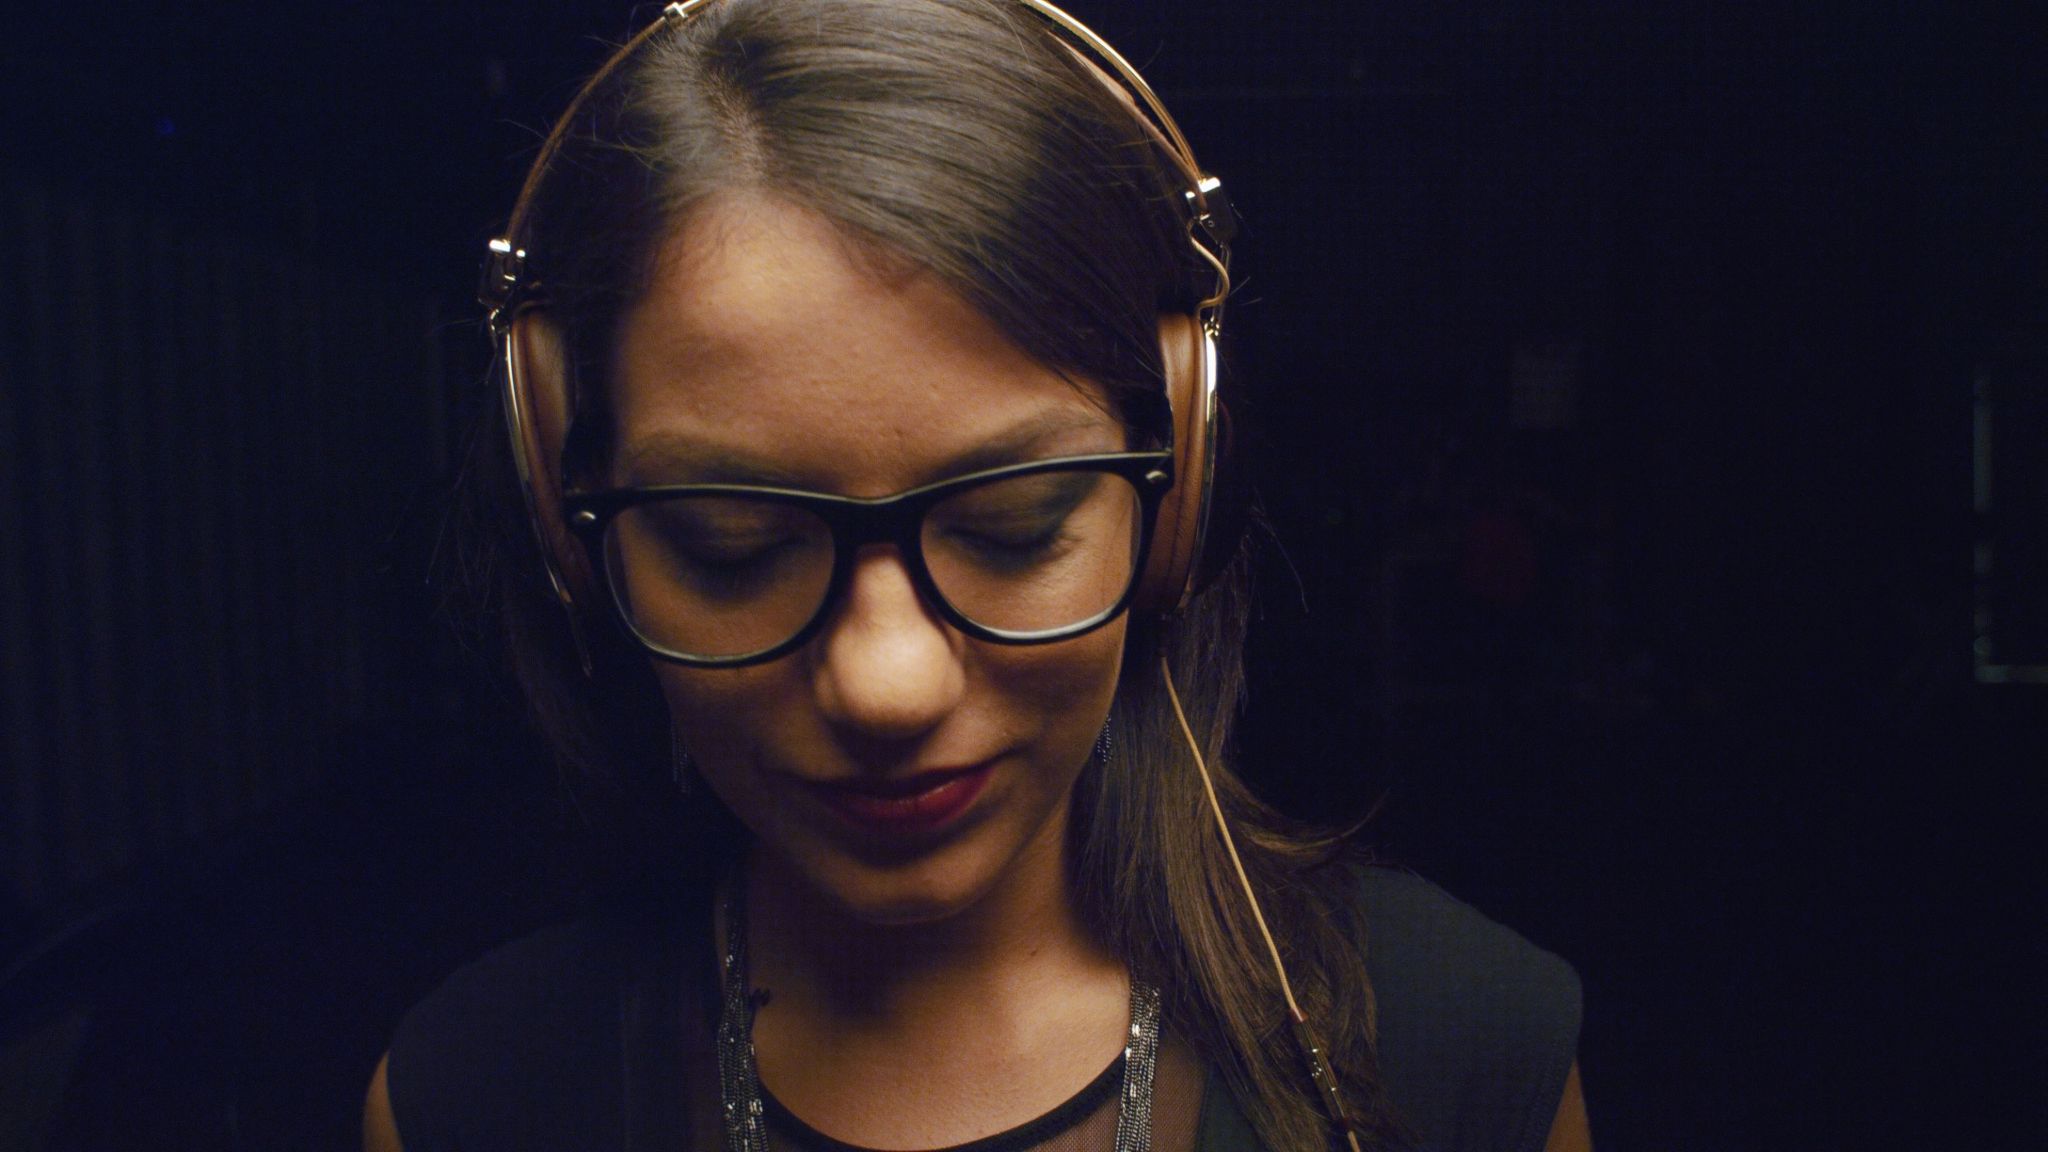 Woman wearing brown headphones and glasses looking down